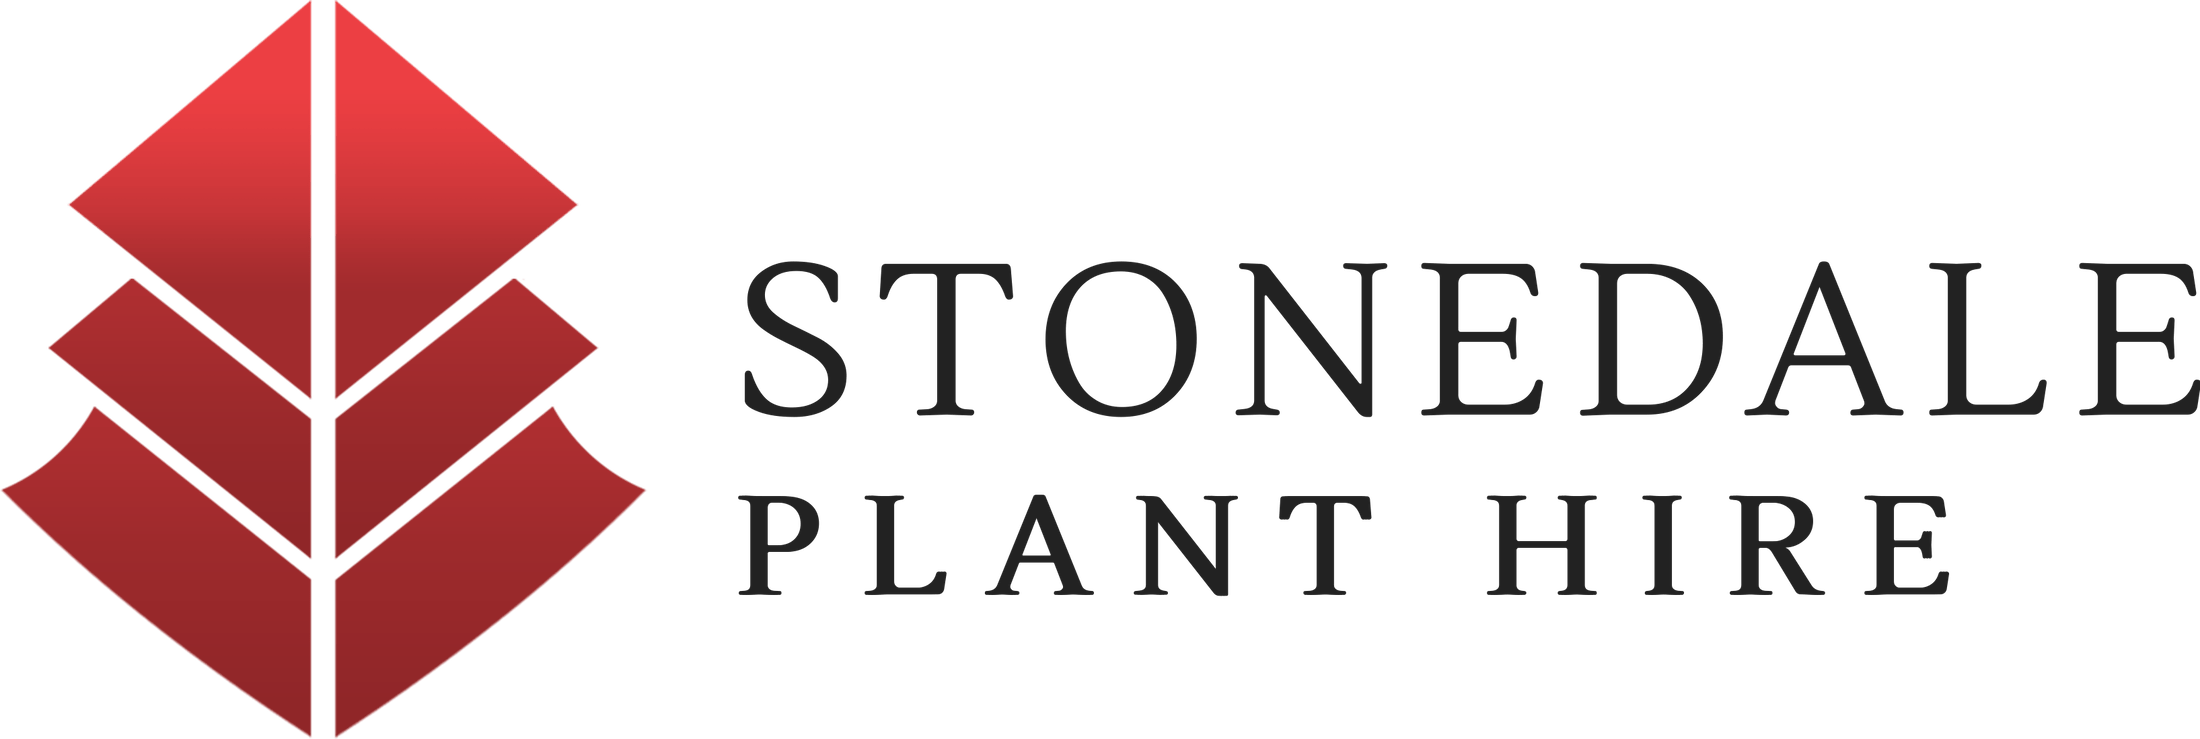 Stonedale Plant Hire Logo PNG